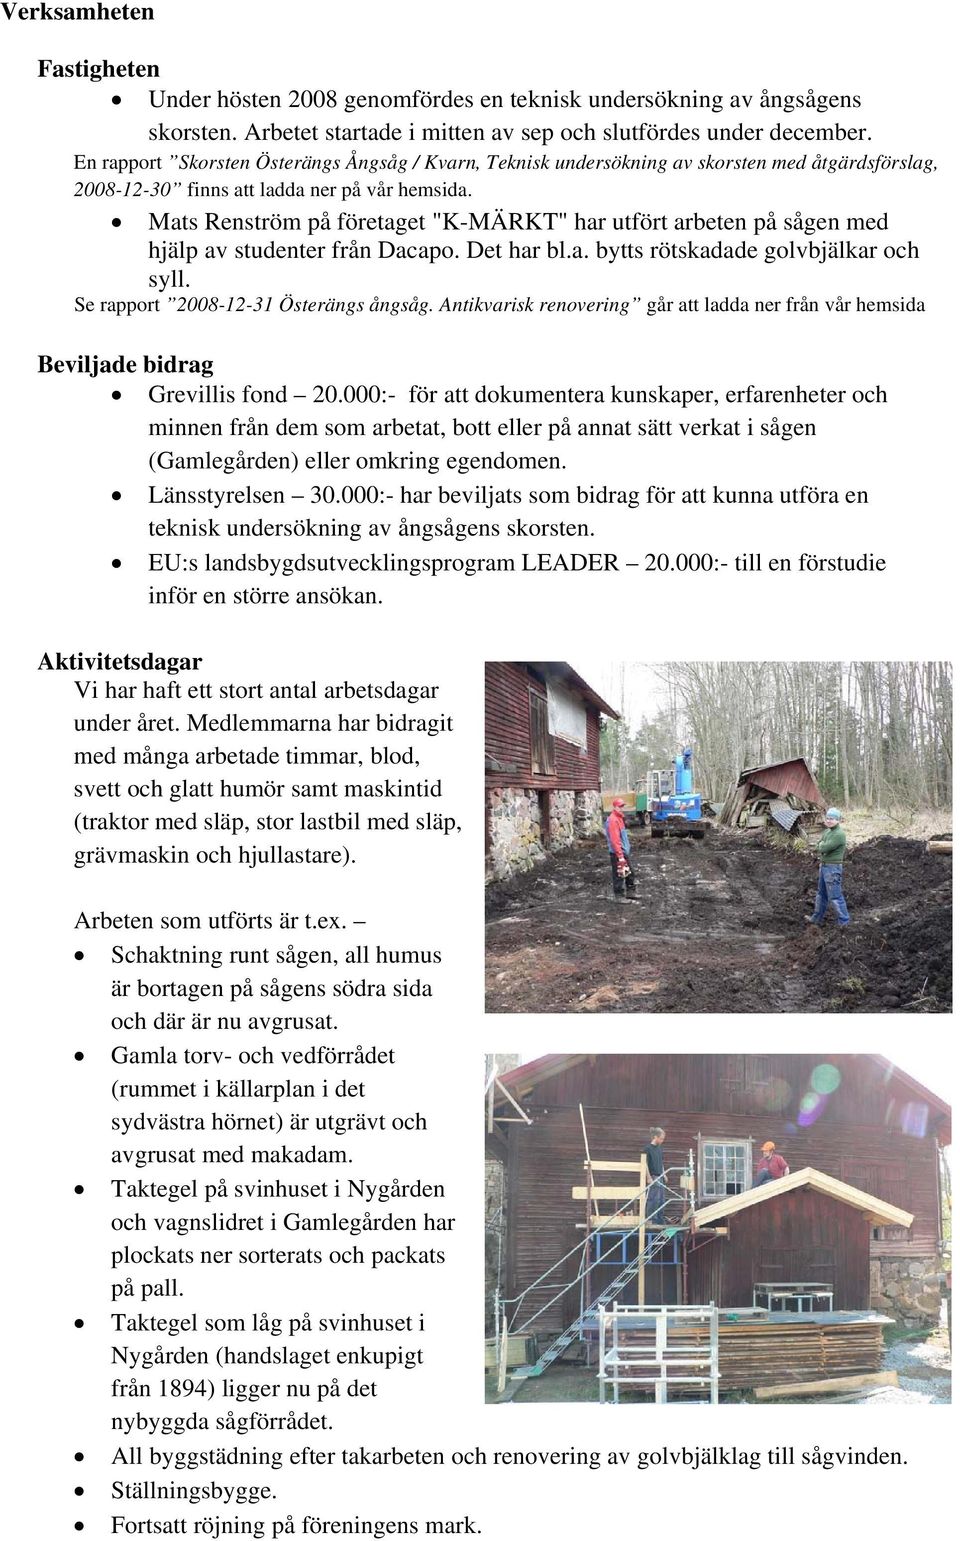 Mats Renström på företaget "K-MÄRKT" har utfört arbeten på sågen med hjälp av studenter från Dacapo. Det har bl.a. bytts rötskadade golvbjälkar och syll. Se rapport 2008-12-31 Österängs ångsåg.